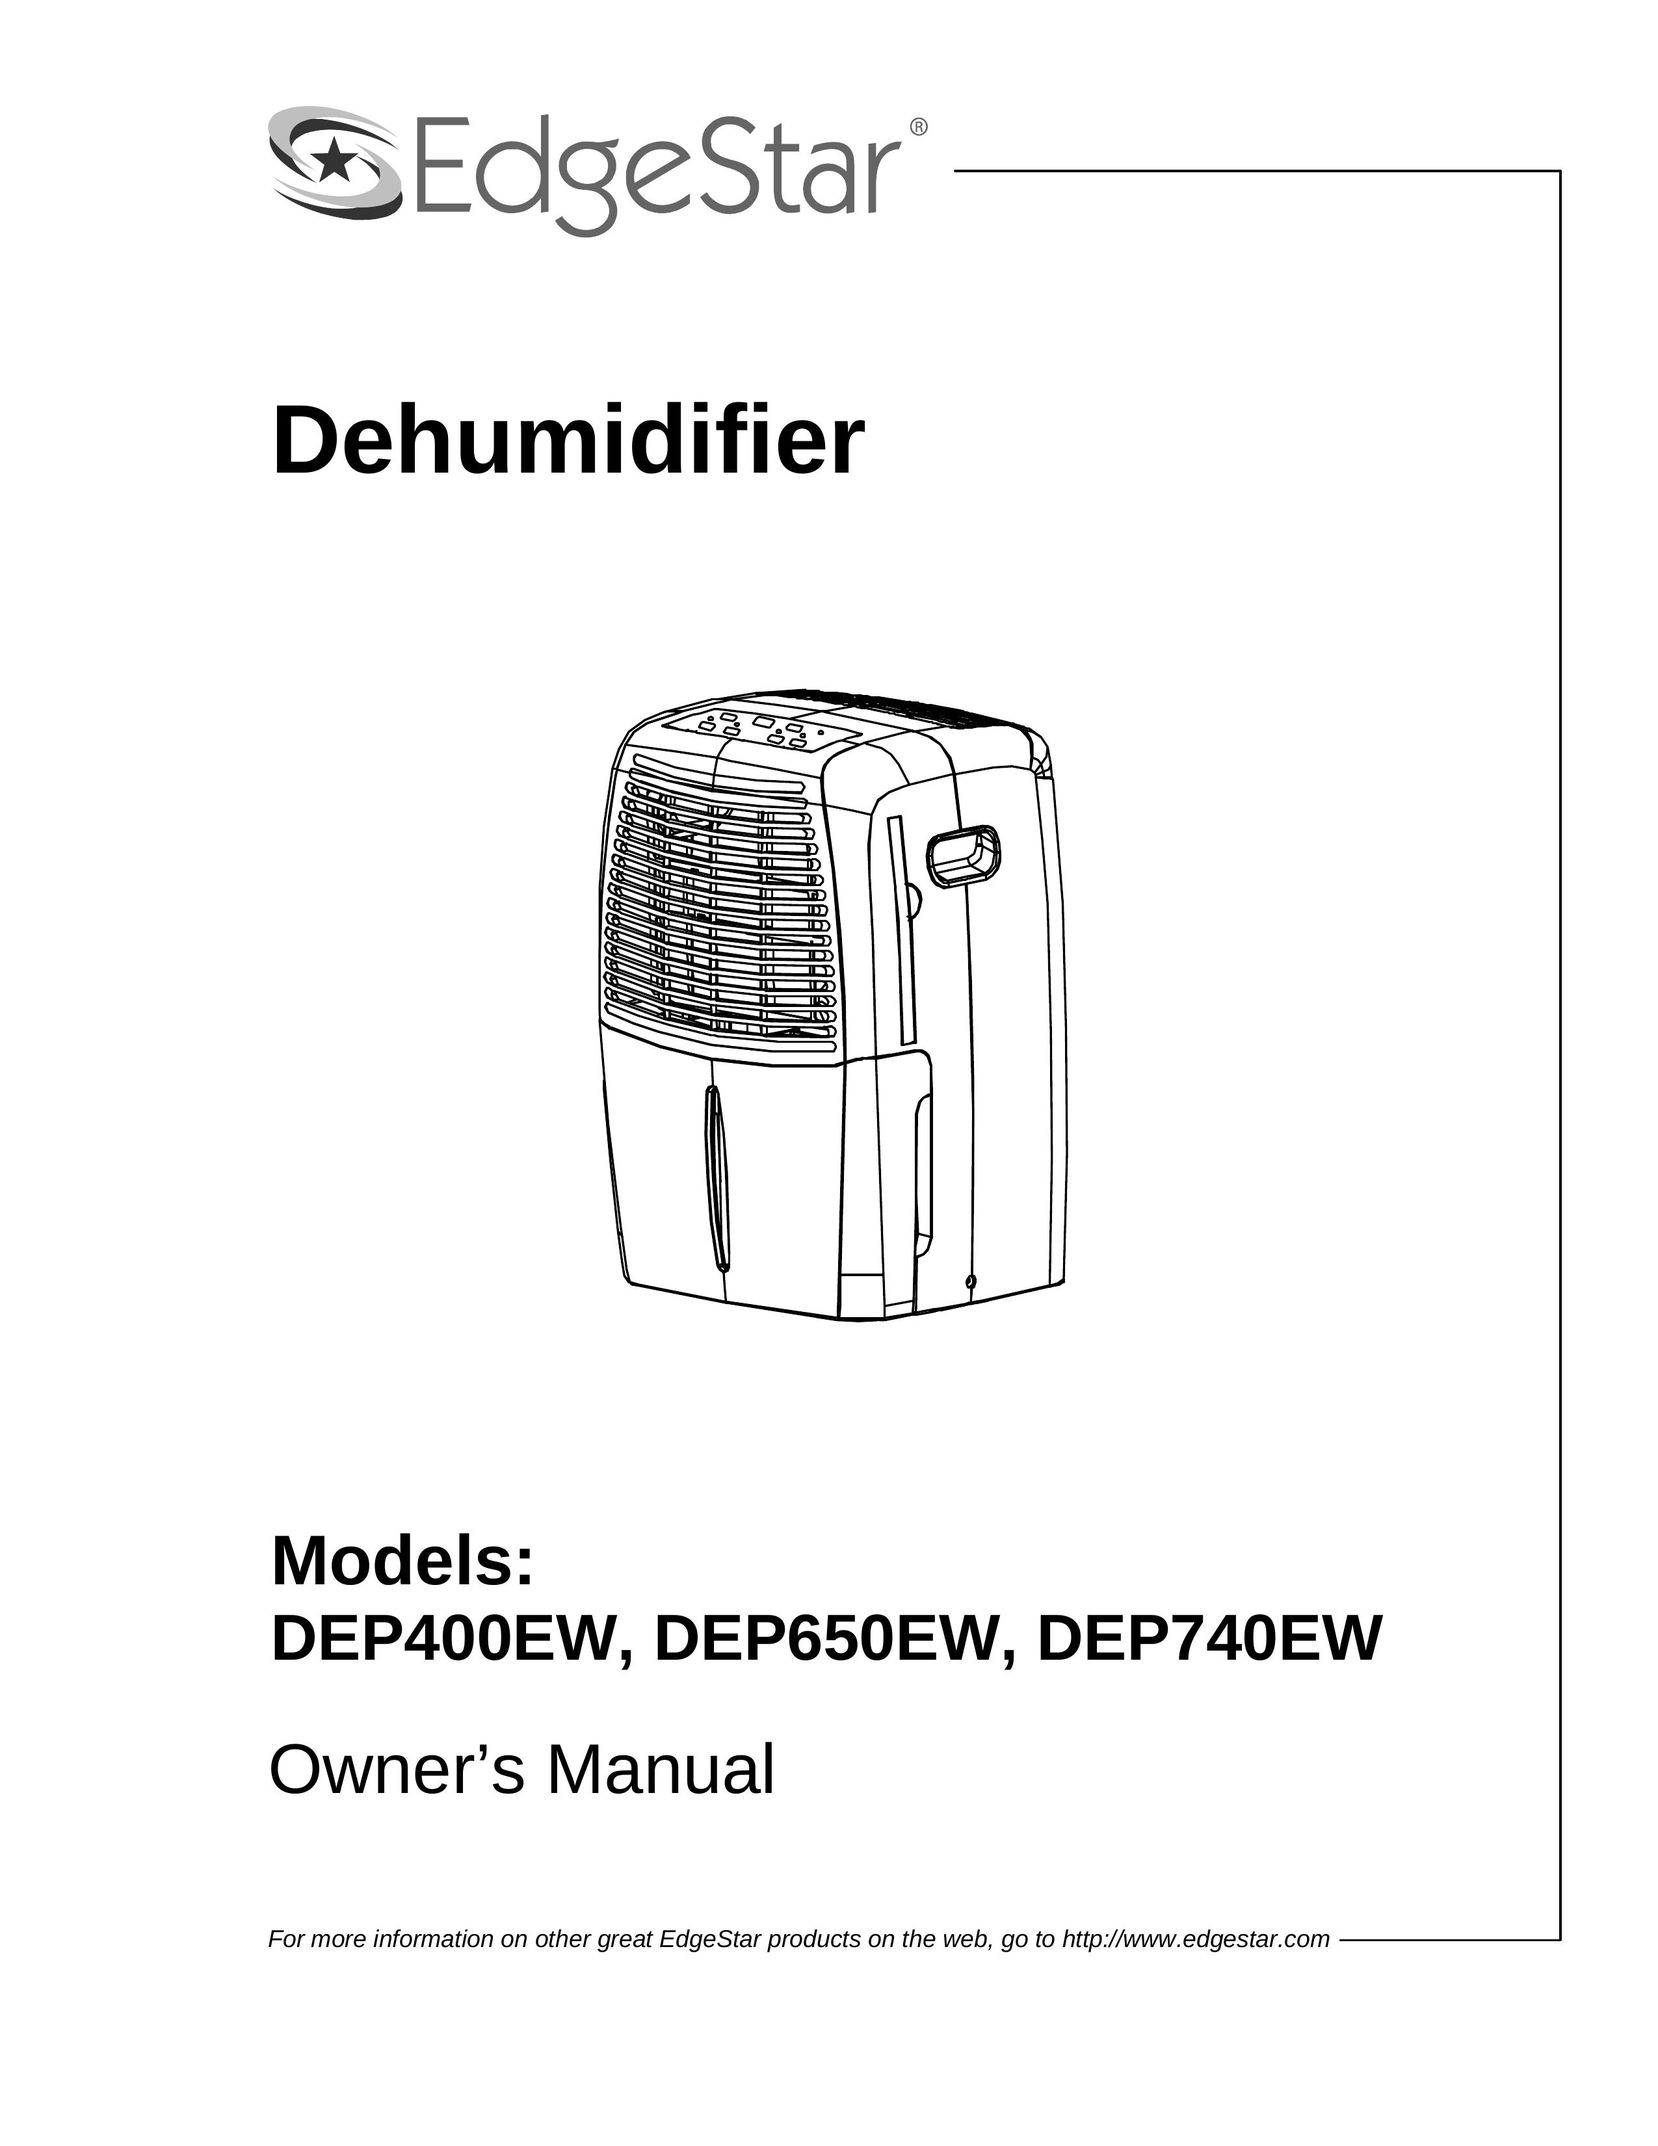 EdgeStar DEP740EW Dehumidifier User Manual